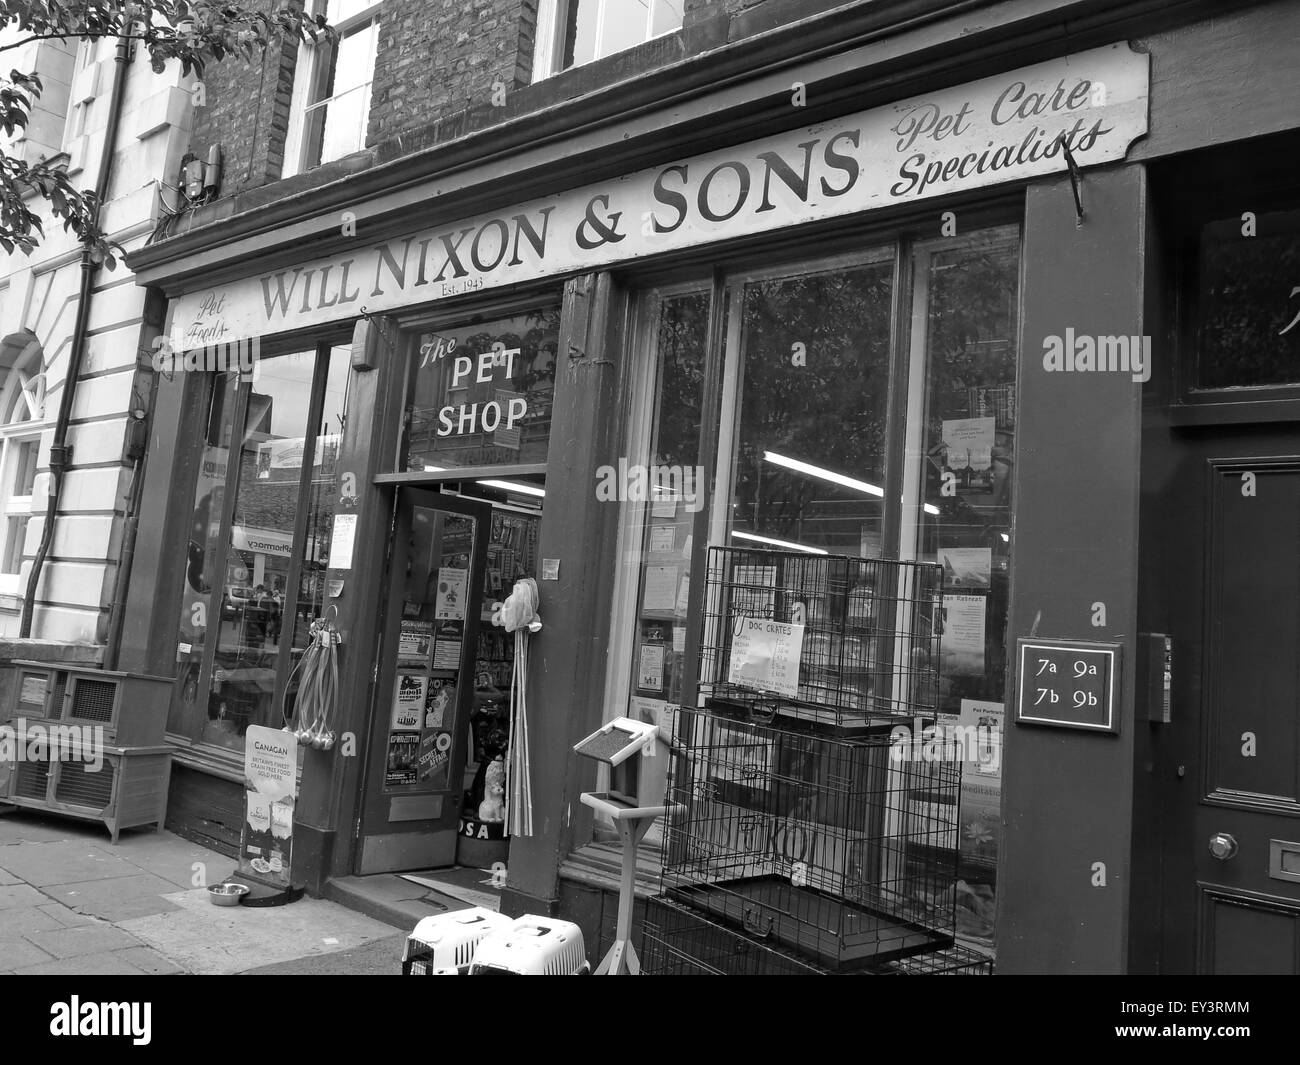 Nixon va et fils,Carlisle traditionnels pet shop,Cumbria, Angleterre, Royaume-Uni, Noir/Blanc Banque D'Images